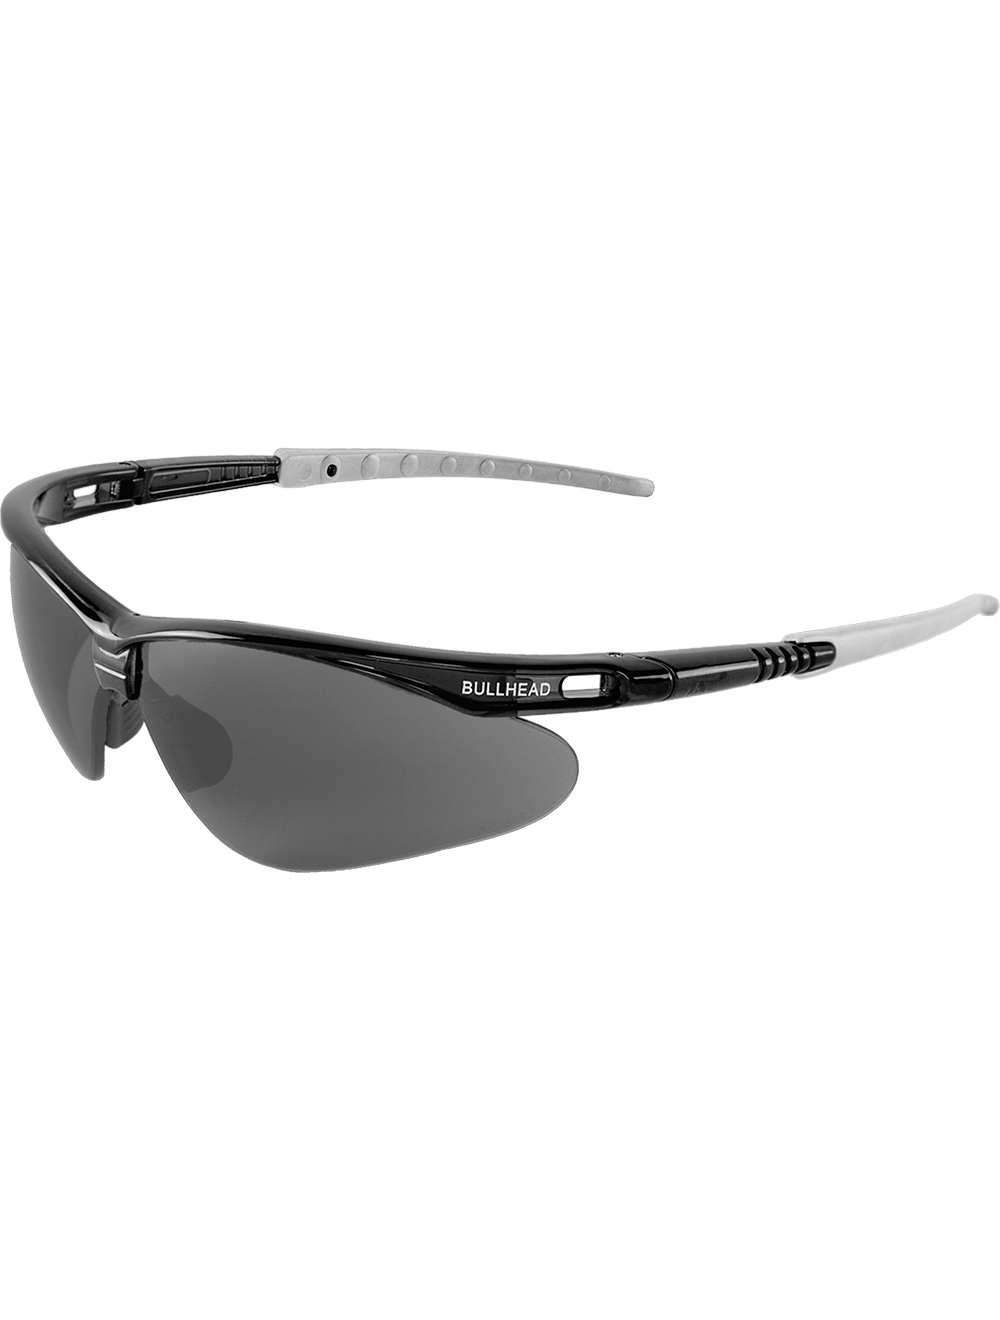 Stinger® Smoke Anti-Fog Lens, Crystal Black Frame Safety Glasses - BH633AF